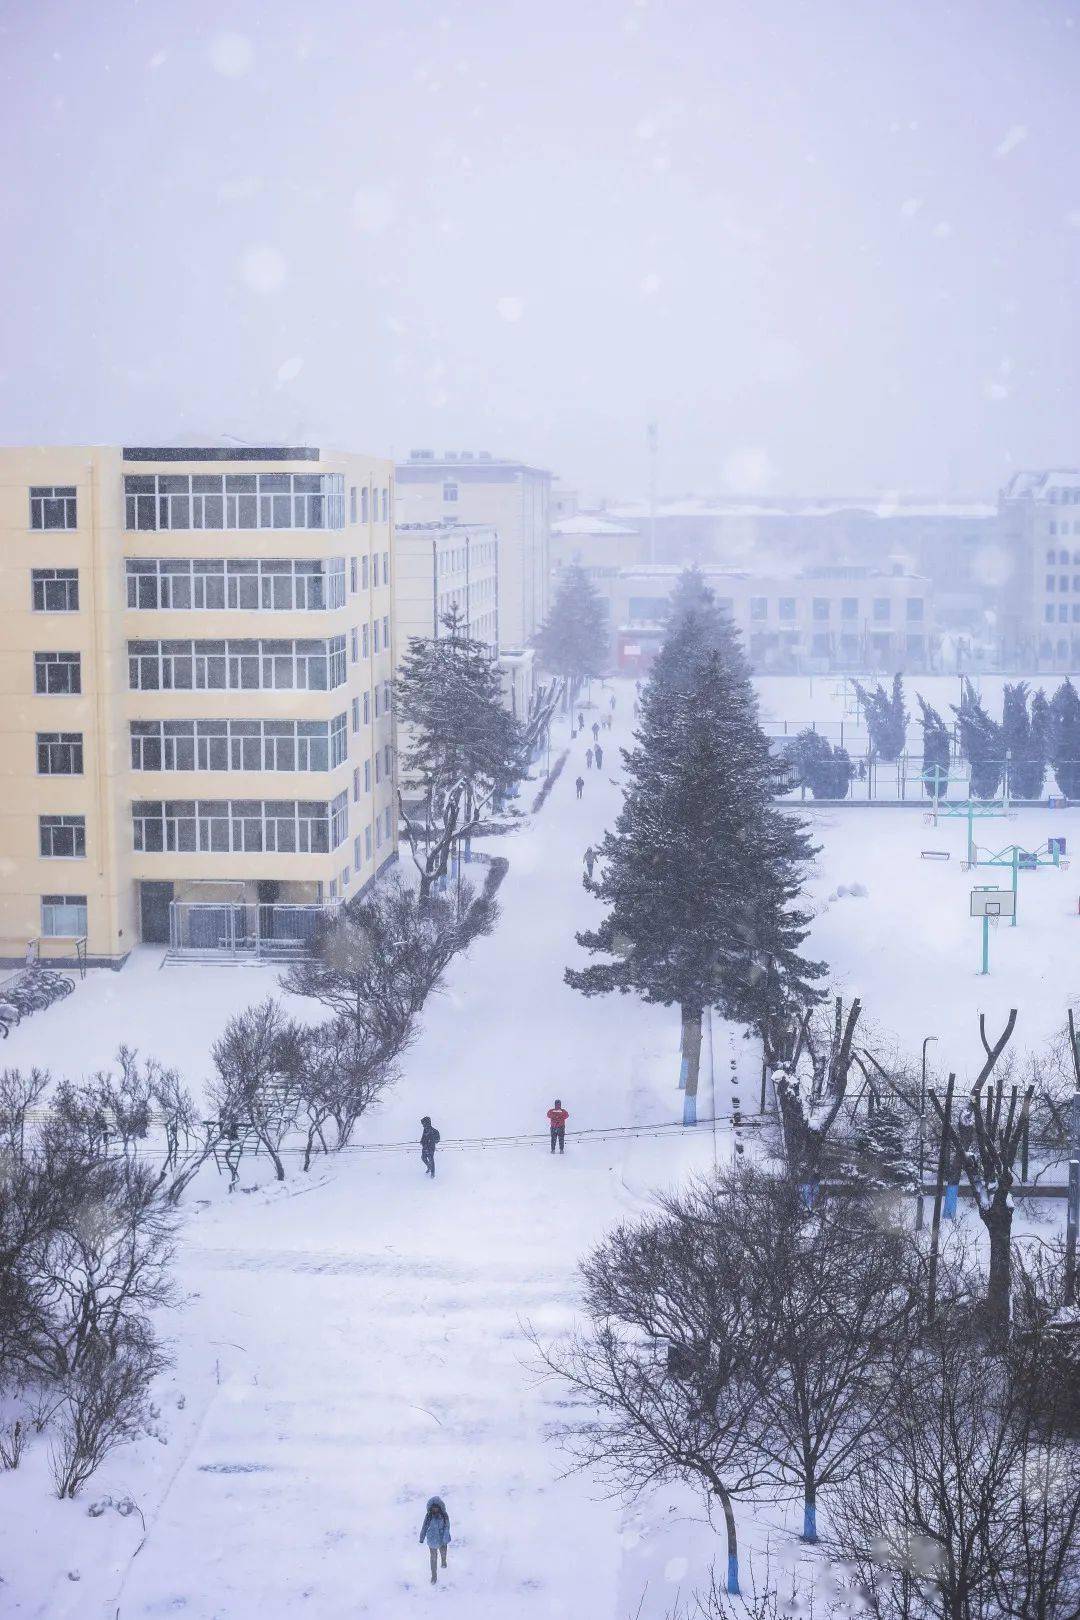 哈尔滨工程大学雪景图片